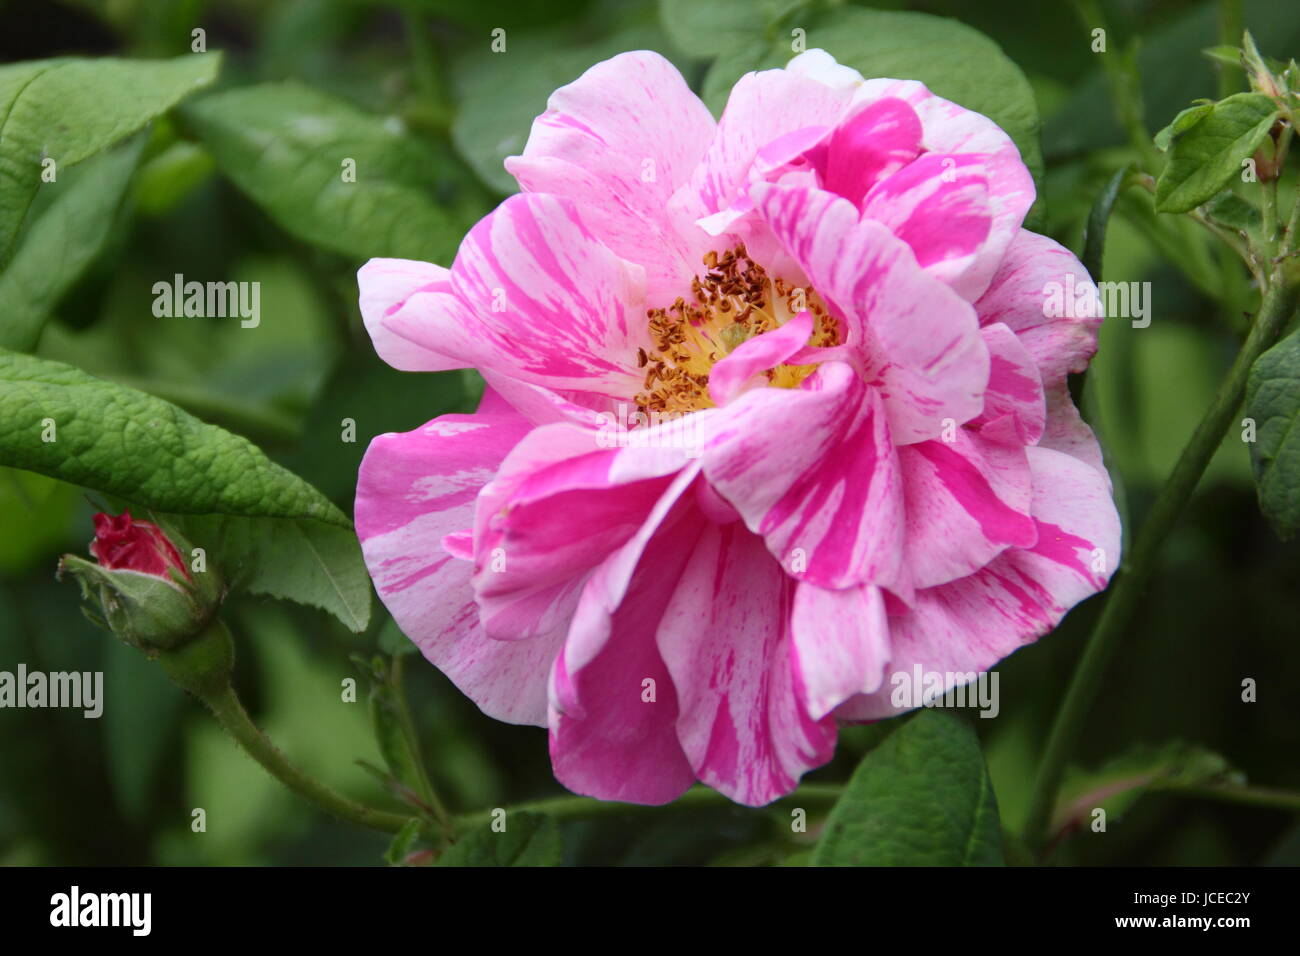 Rosa Mundi, un fragrante, striped vecchio rosa gallica conosciuto anche come "rosa gallica Versicolor', in piena fioritura in un giardino inglese in giugno, Regno Unito Foto Stock